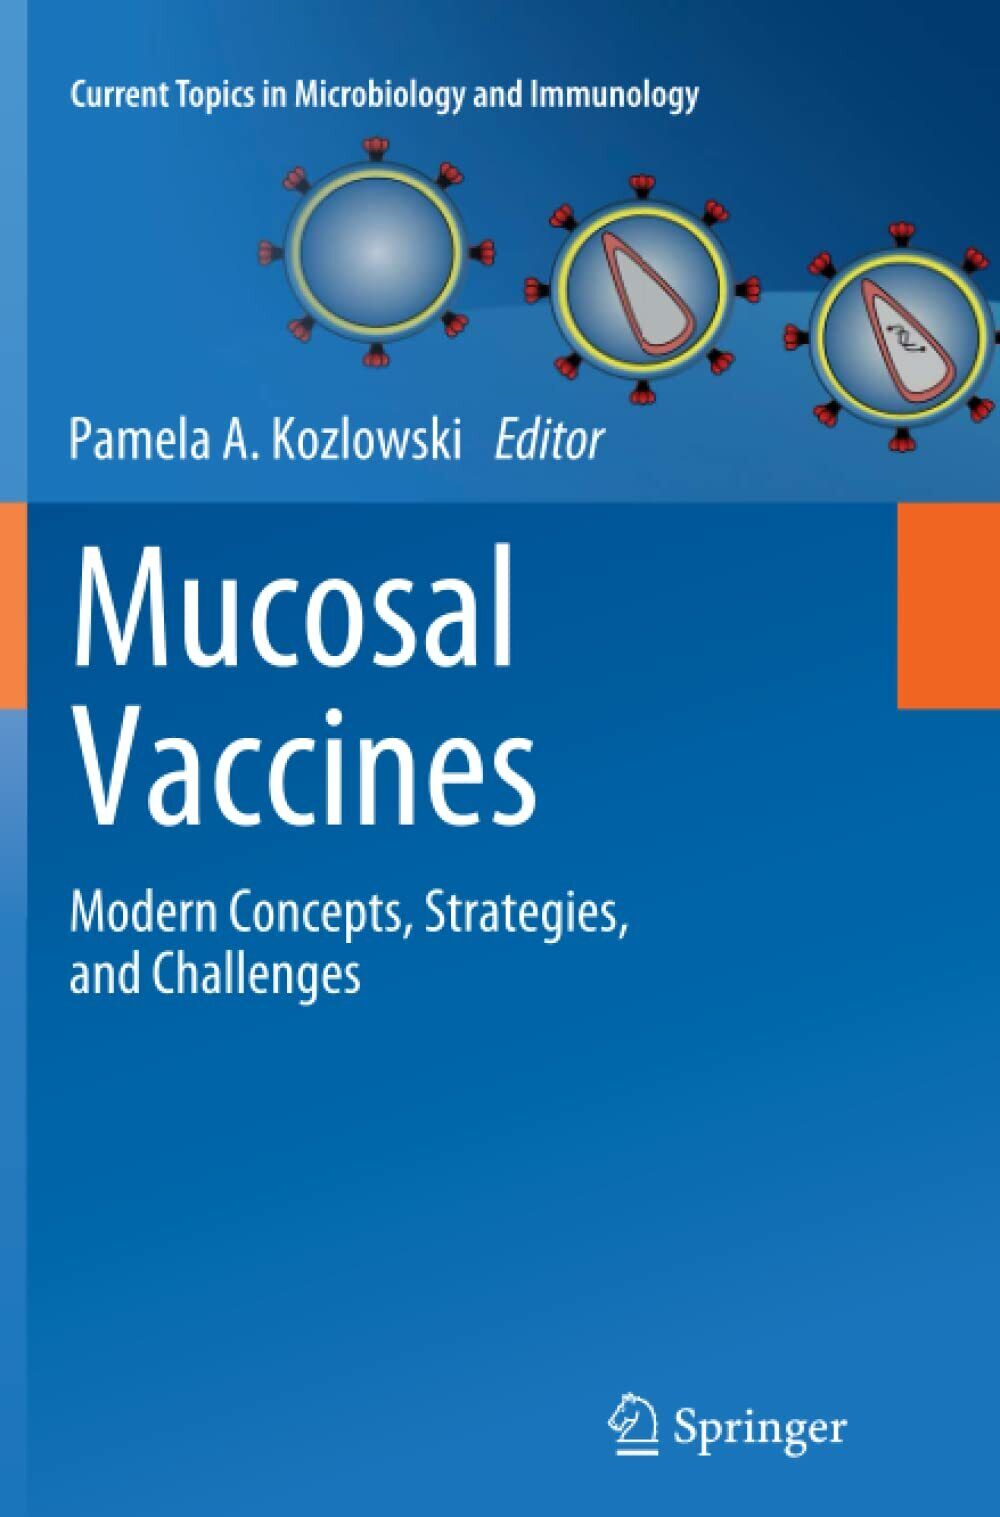 Mucosal Vaccines - Pamela A. Kozlowski - Springer, 2014 libro usato